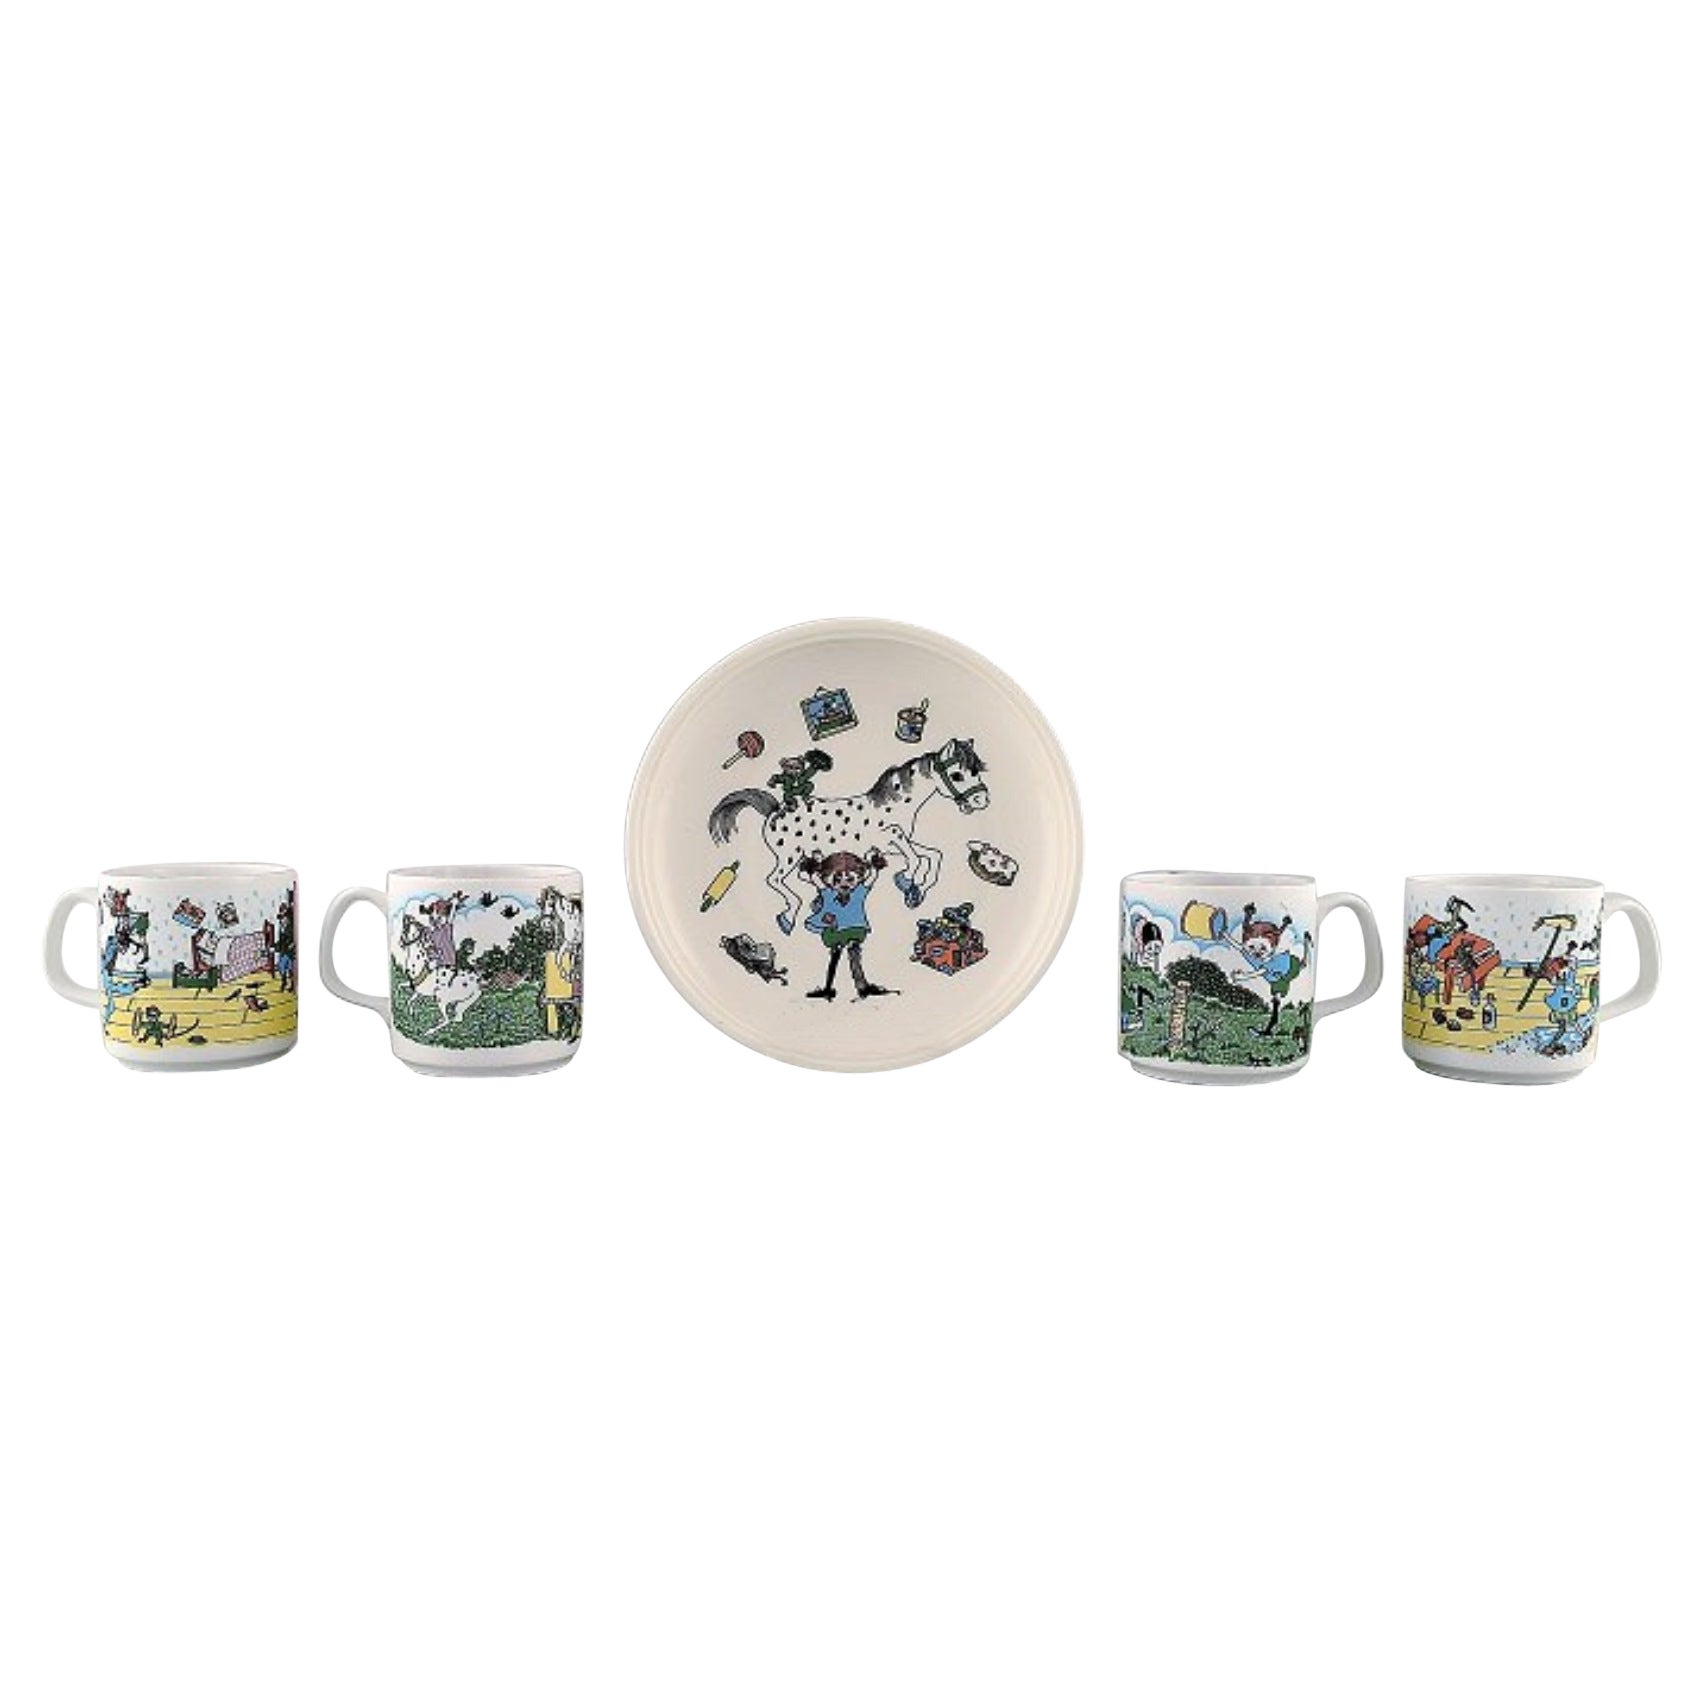 Rörstrand, Vier Tassen und ein Teller aus Porzellan mit Pippi-Langstrumpf-Motiven